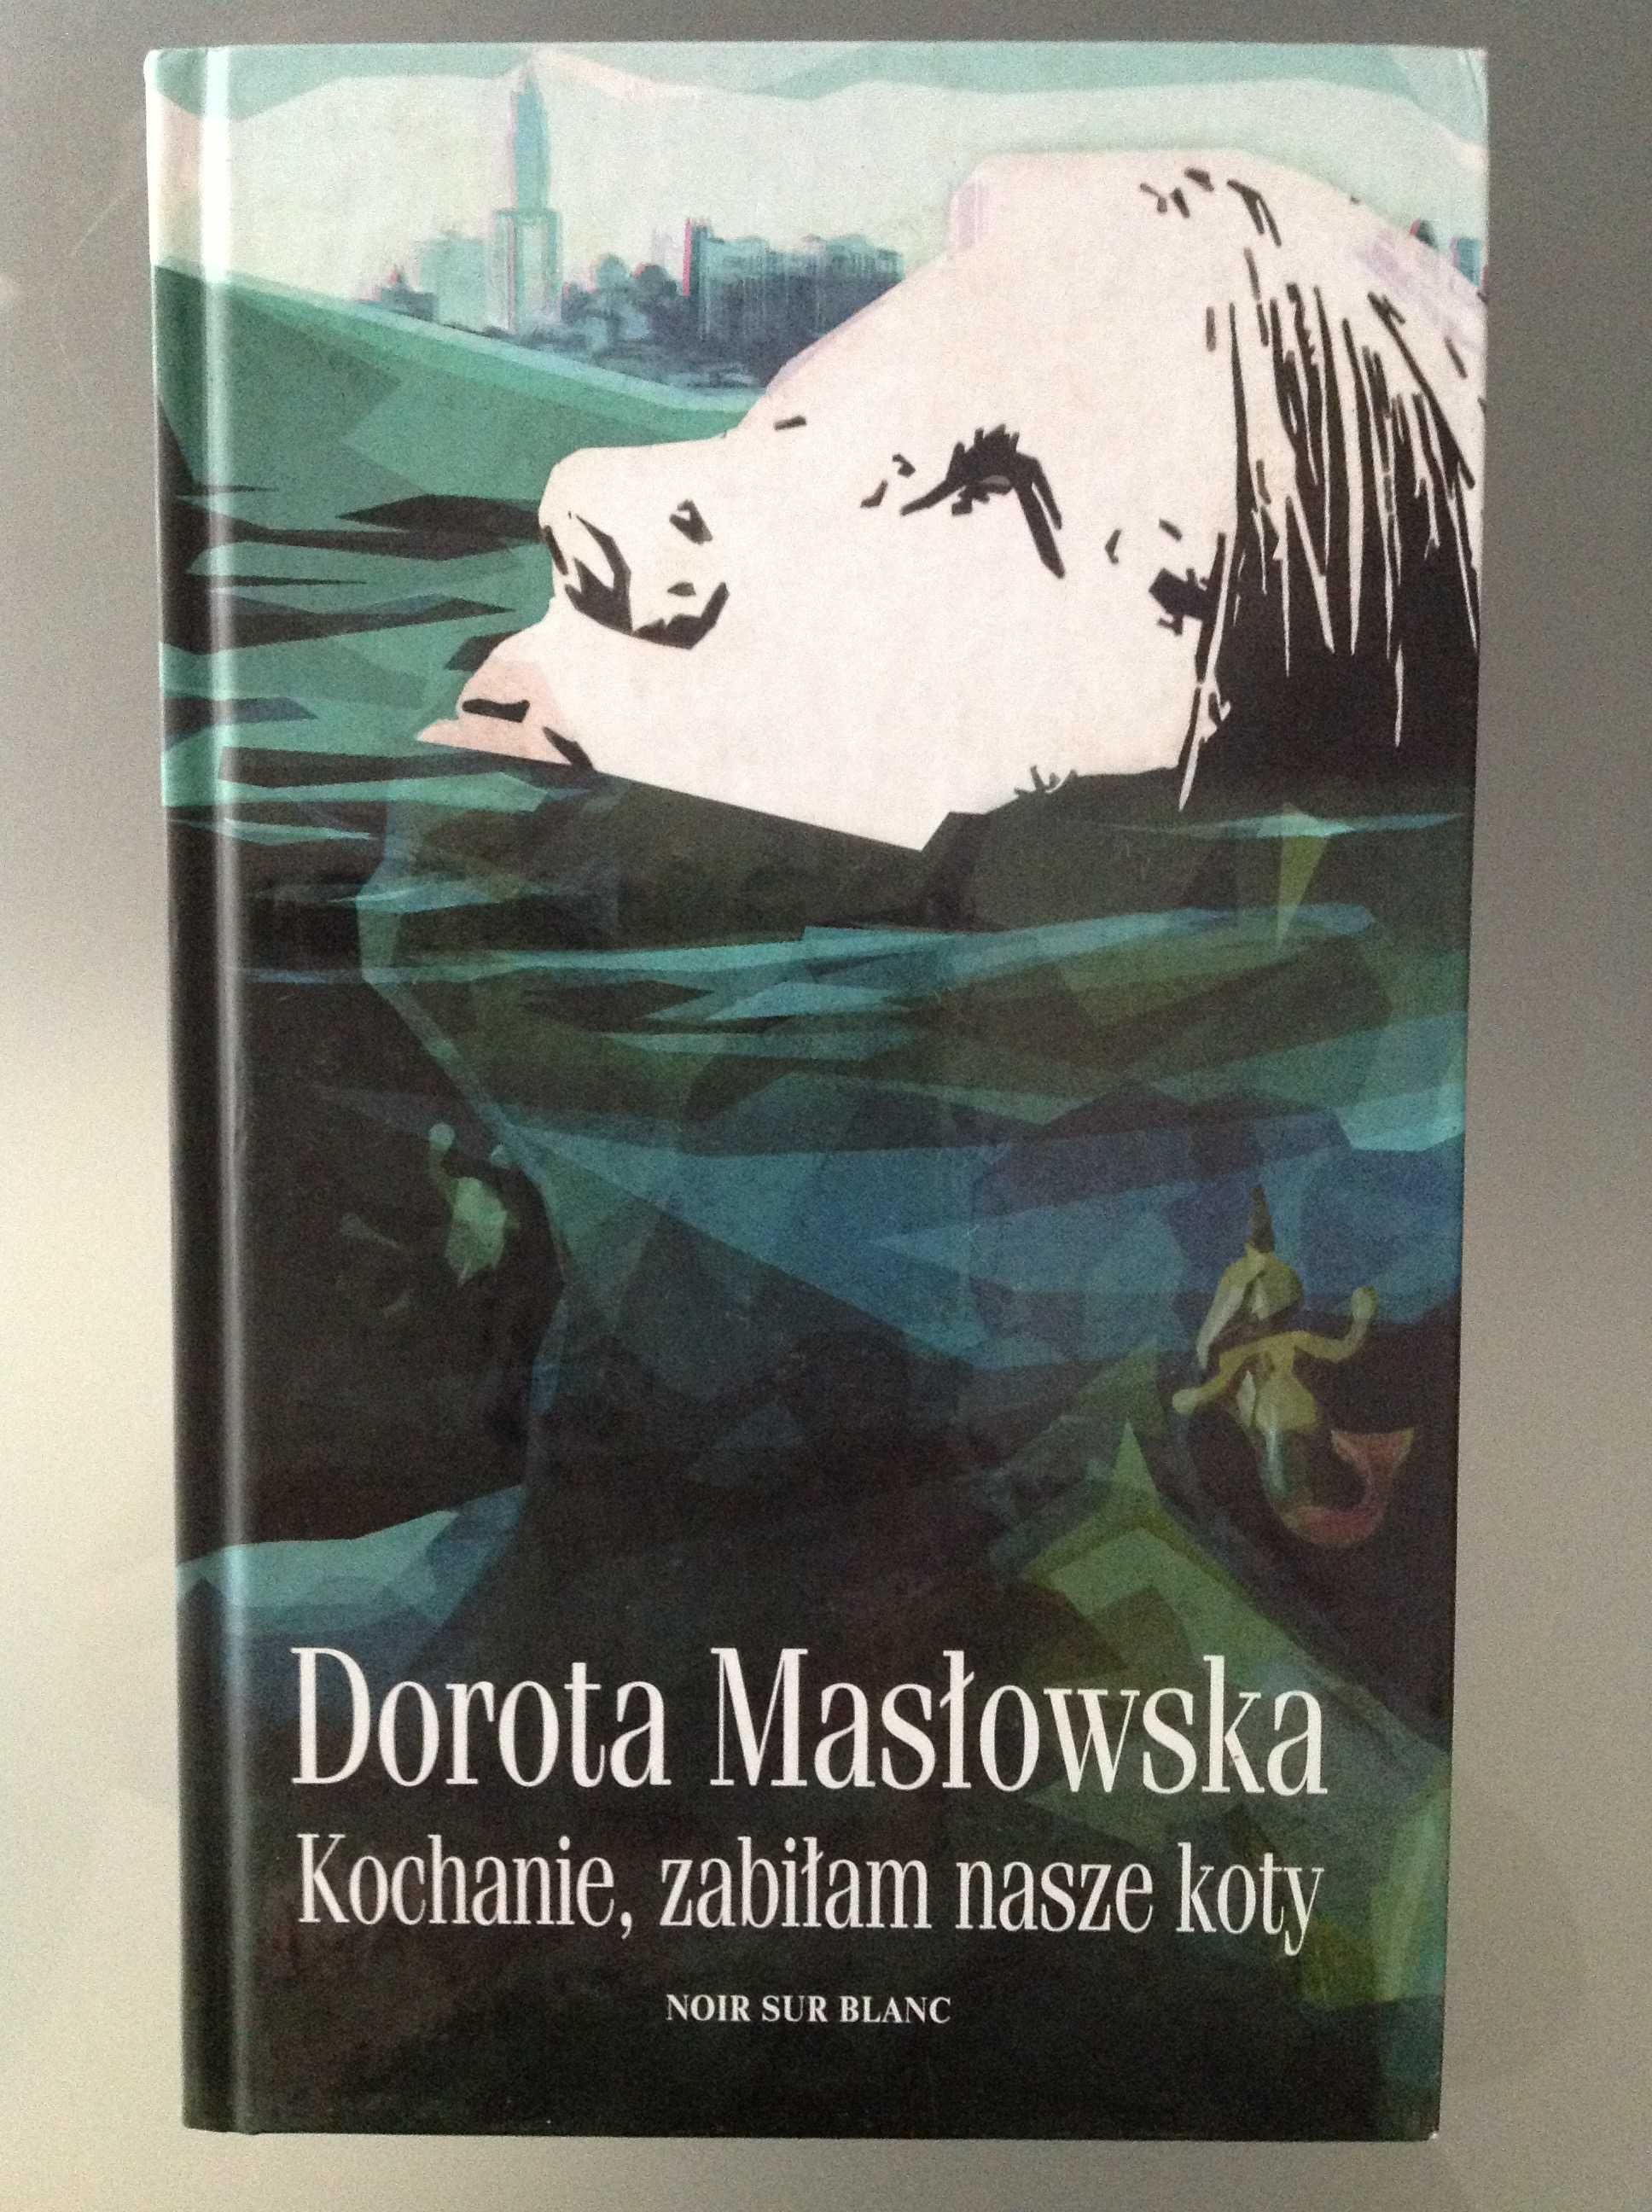 Kochanie, zabiłam nasze koty - Dorota Masłowska